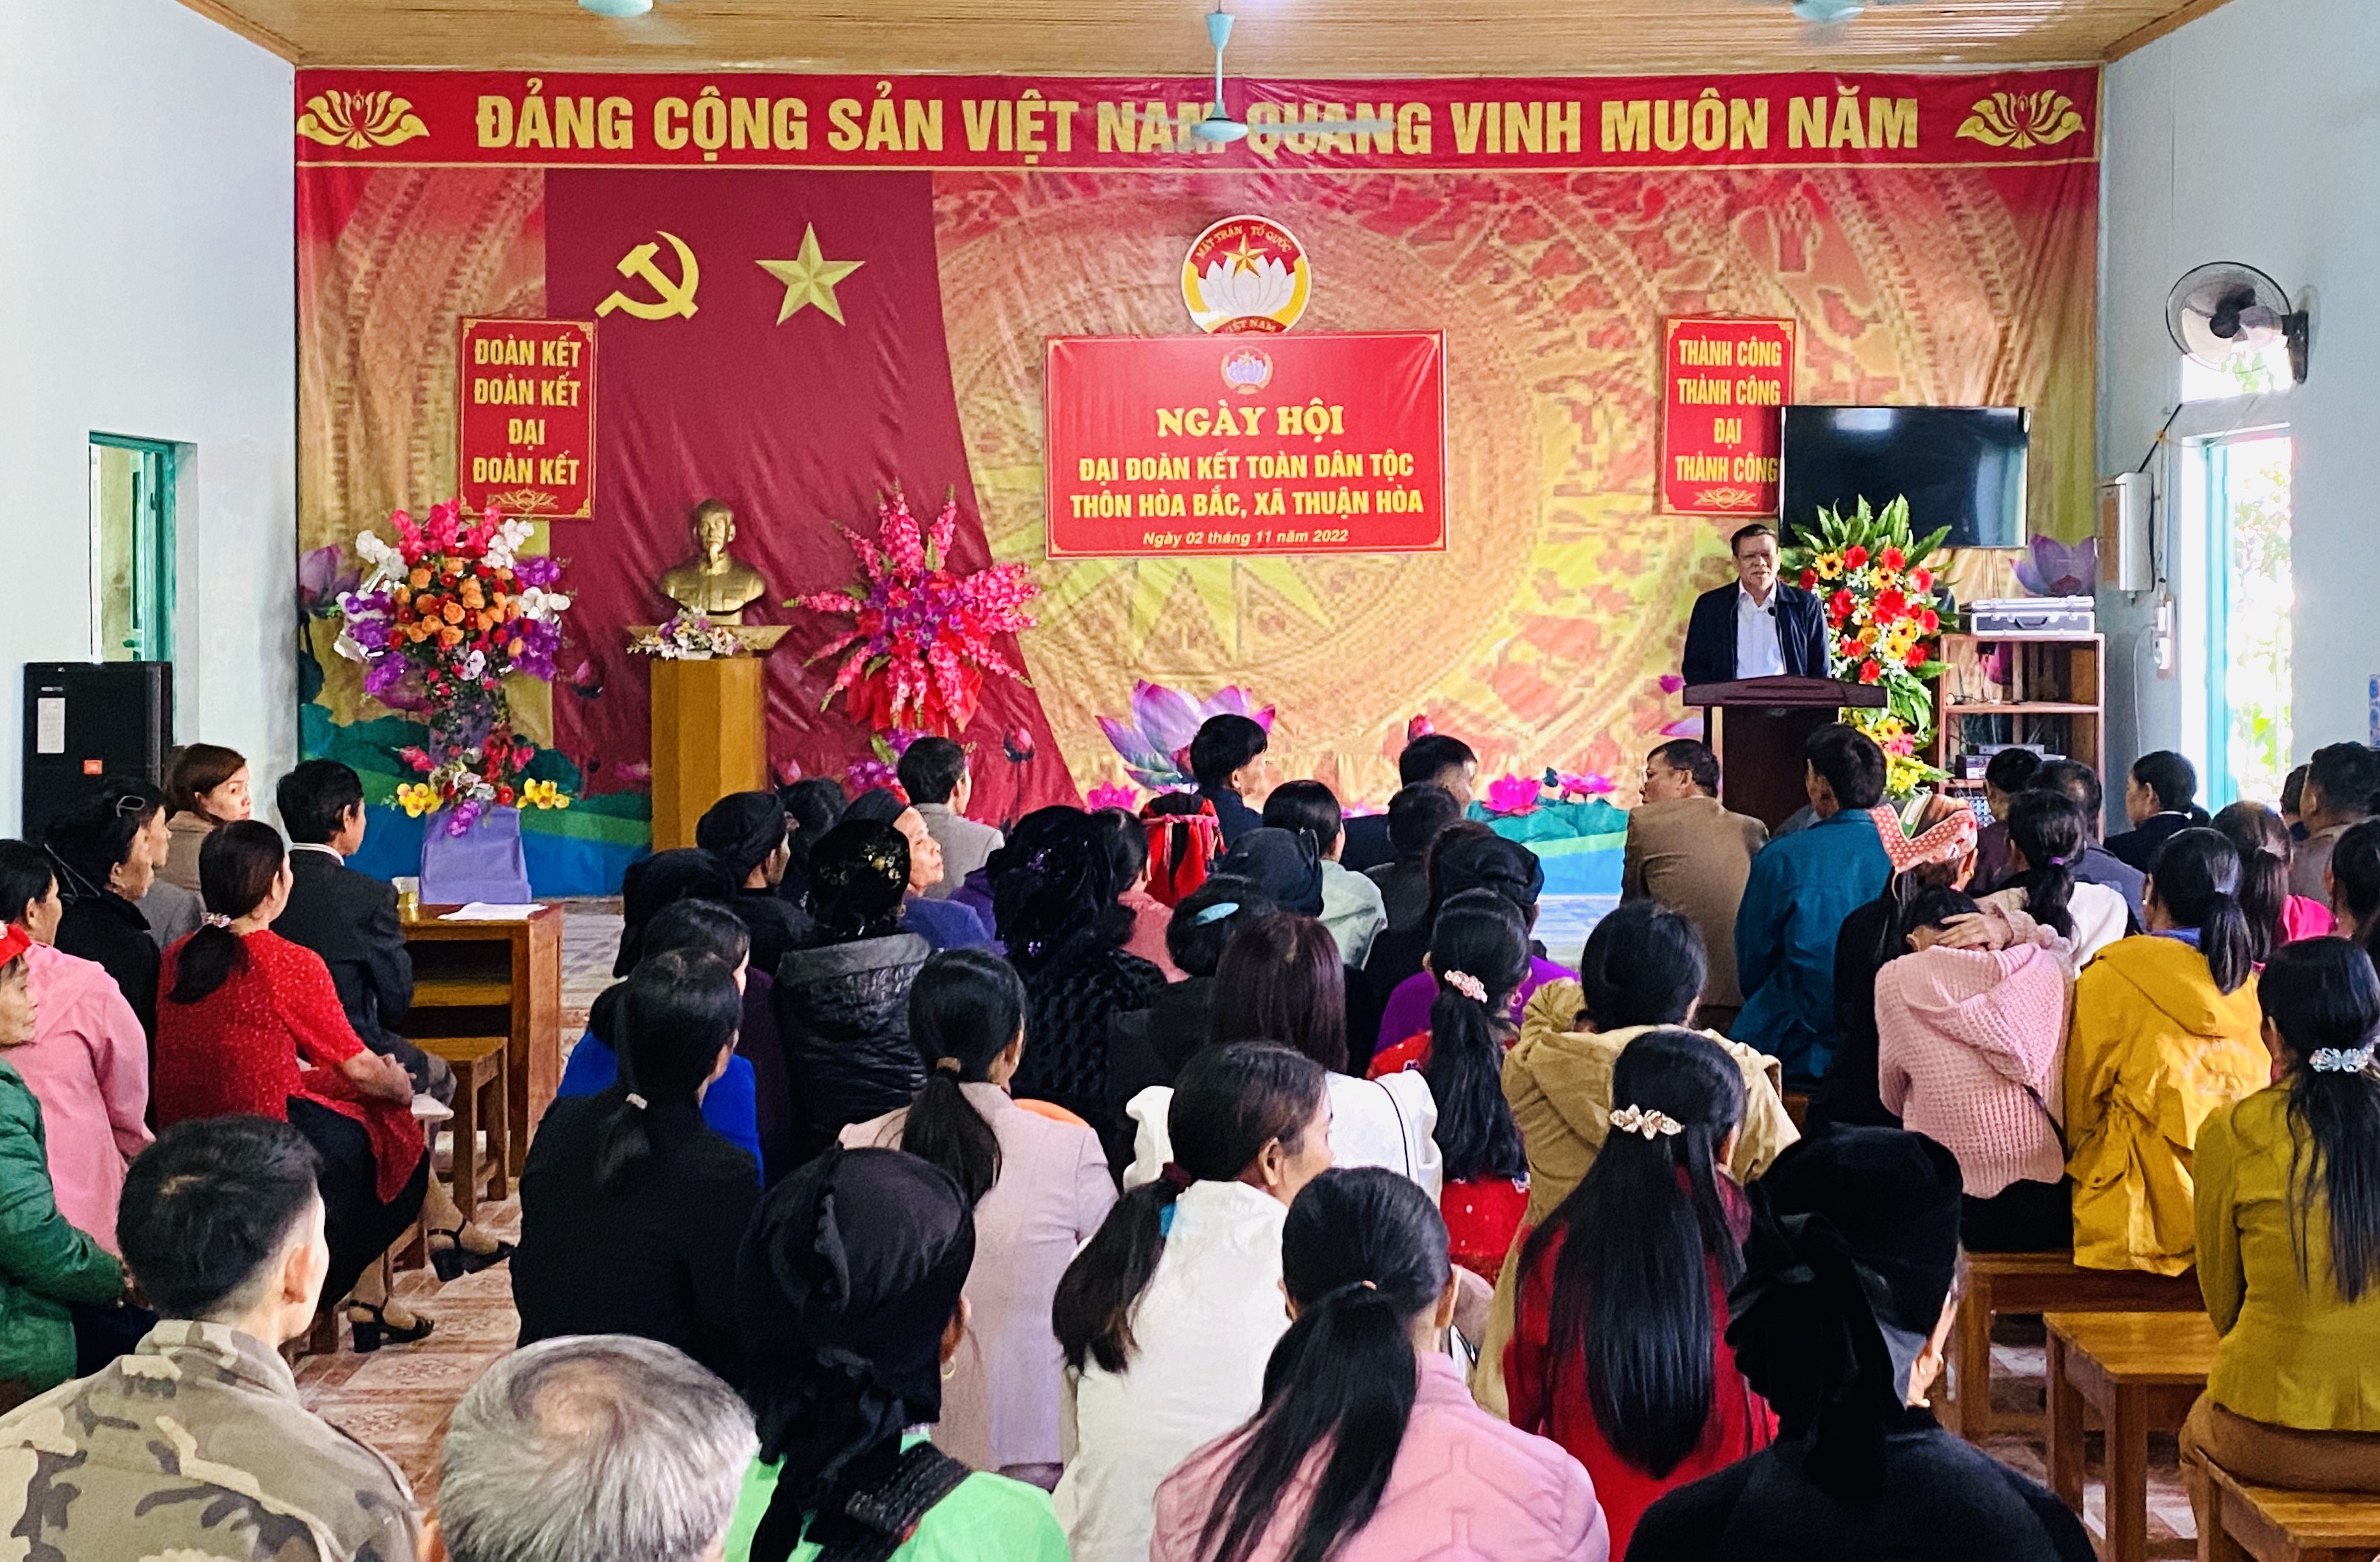 Ngày hội Đại đoàn kết thôn Hòa Bắc, xã Thuận Hòa